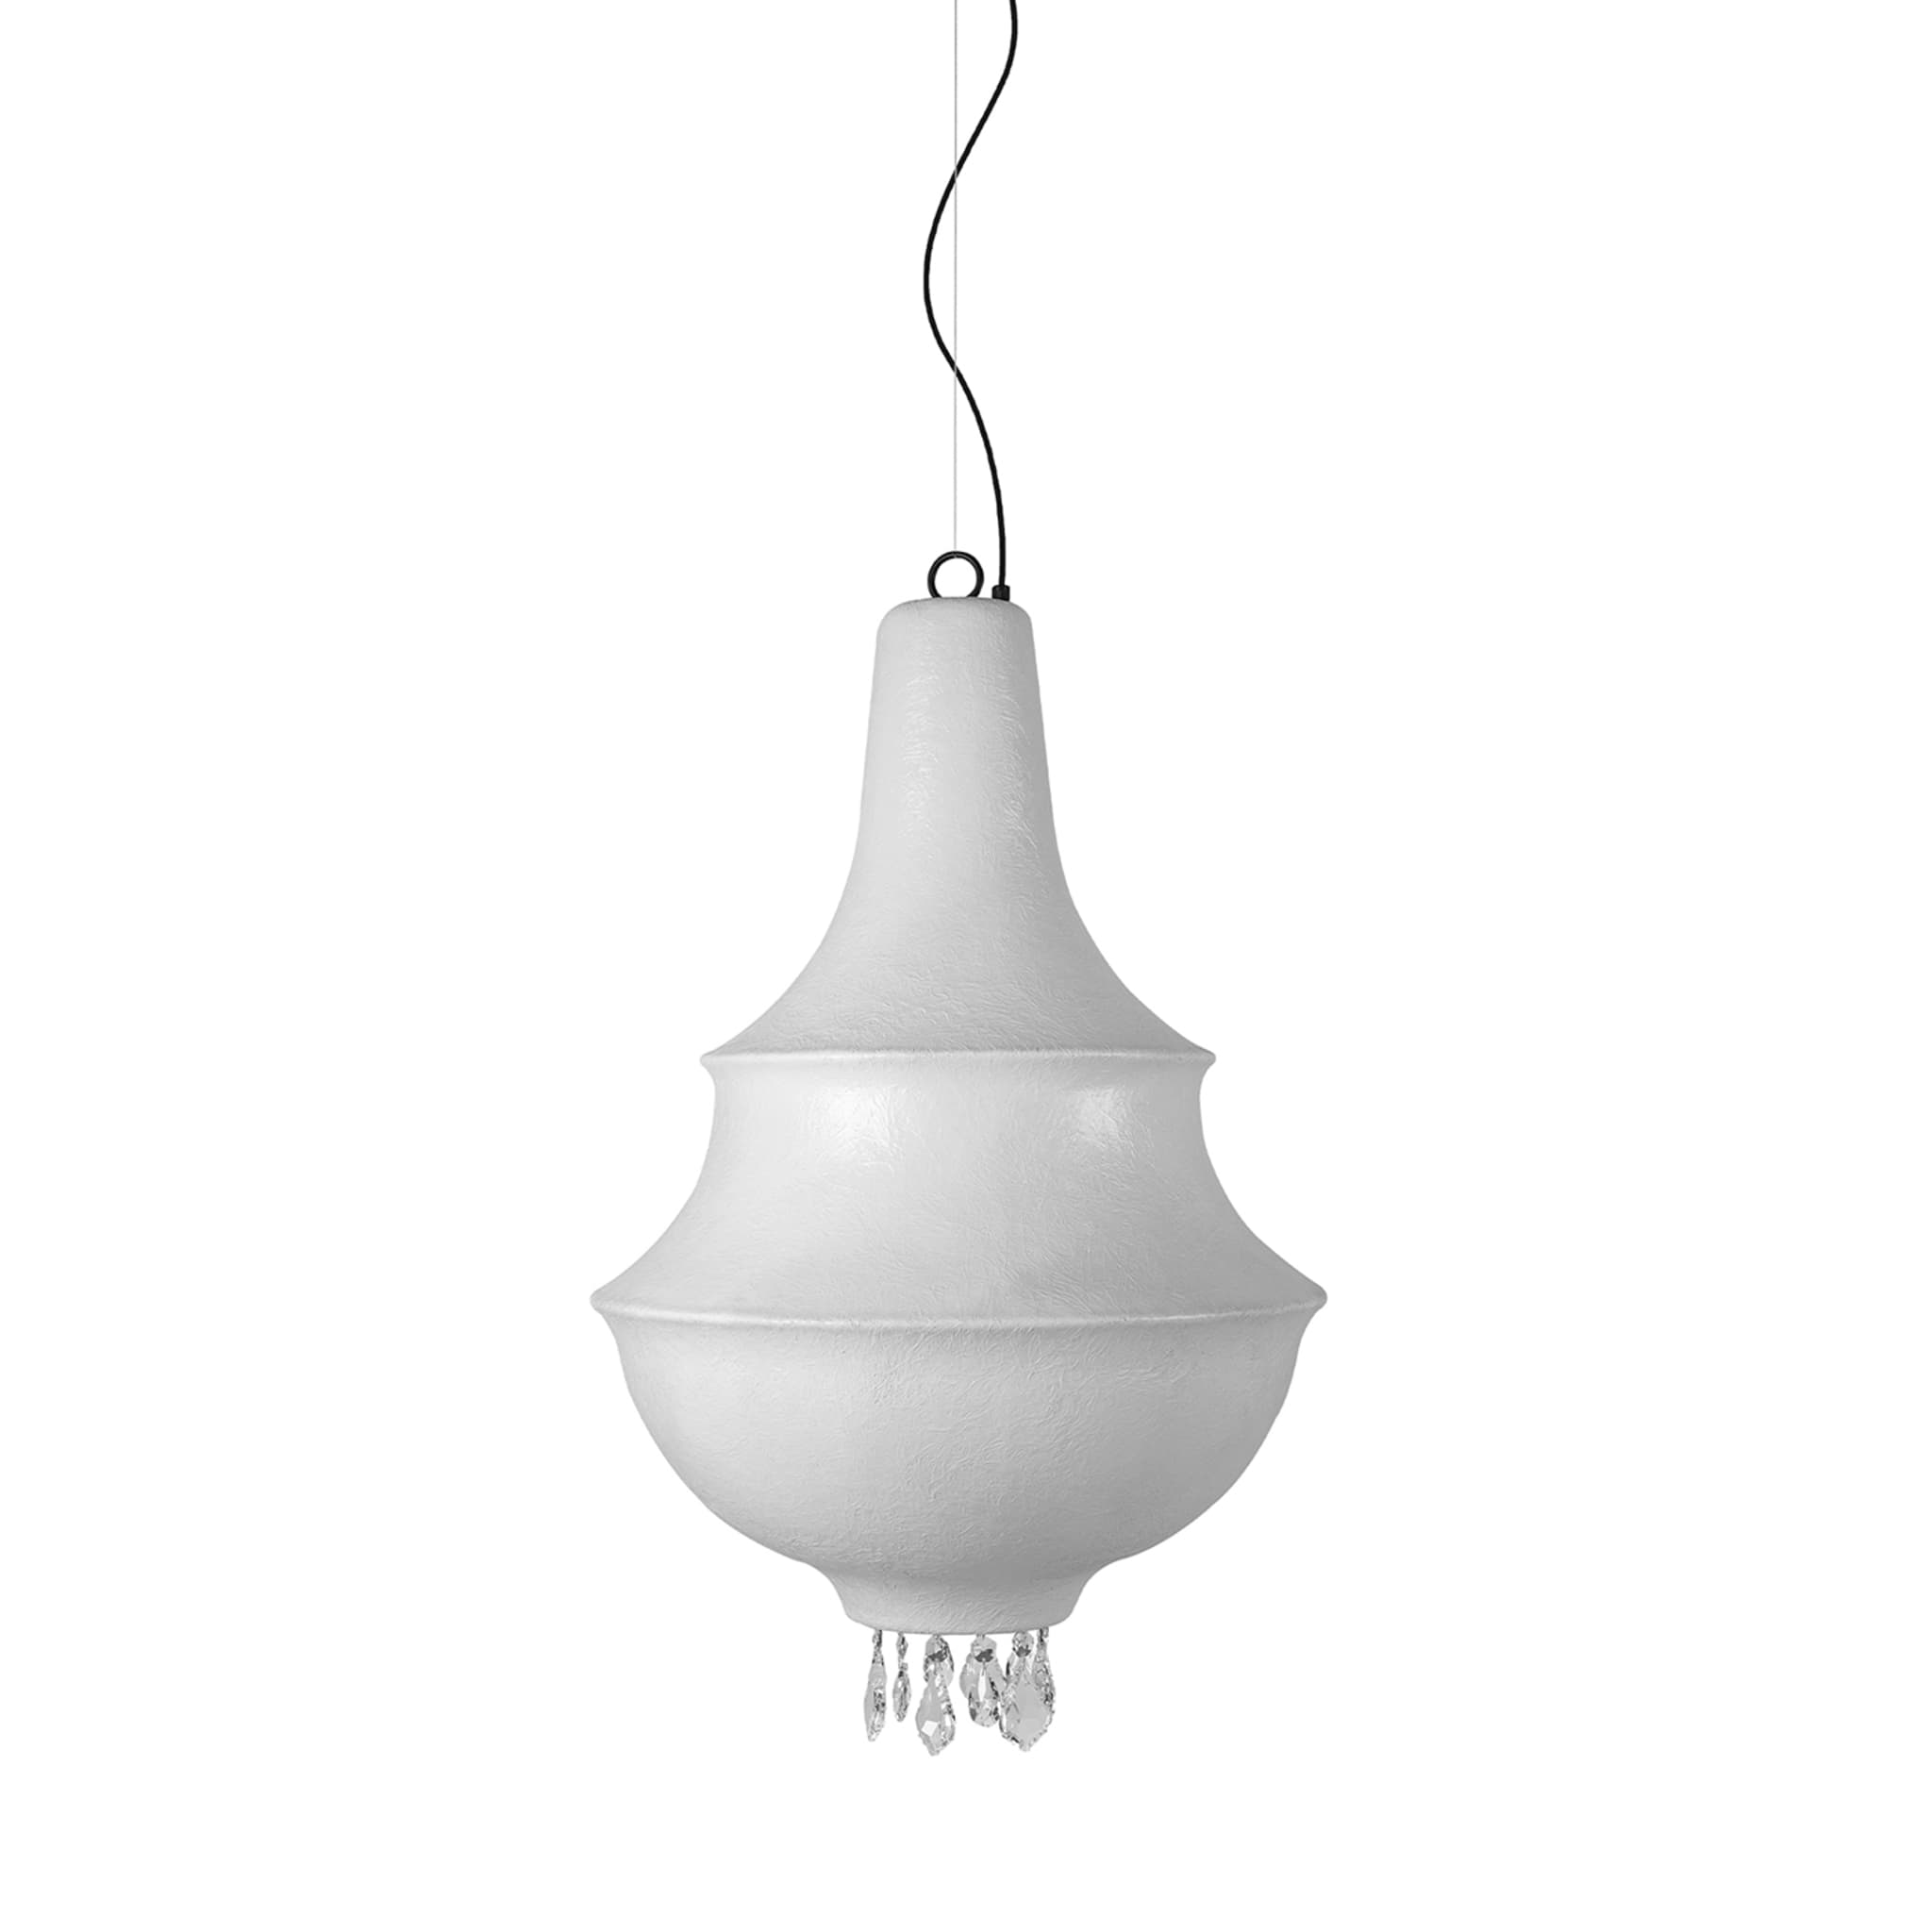 Lady D Large lampe suspendue blanche - Vue principale